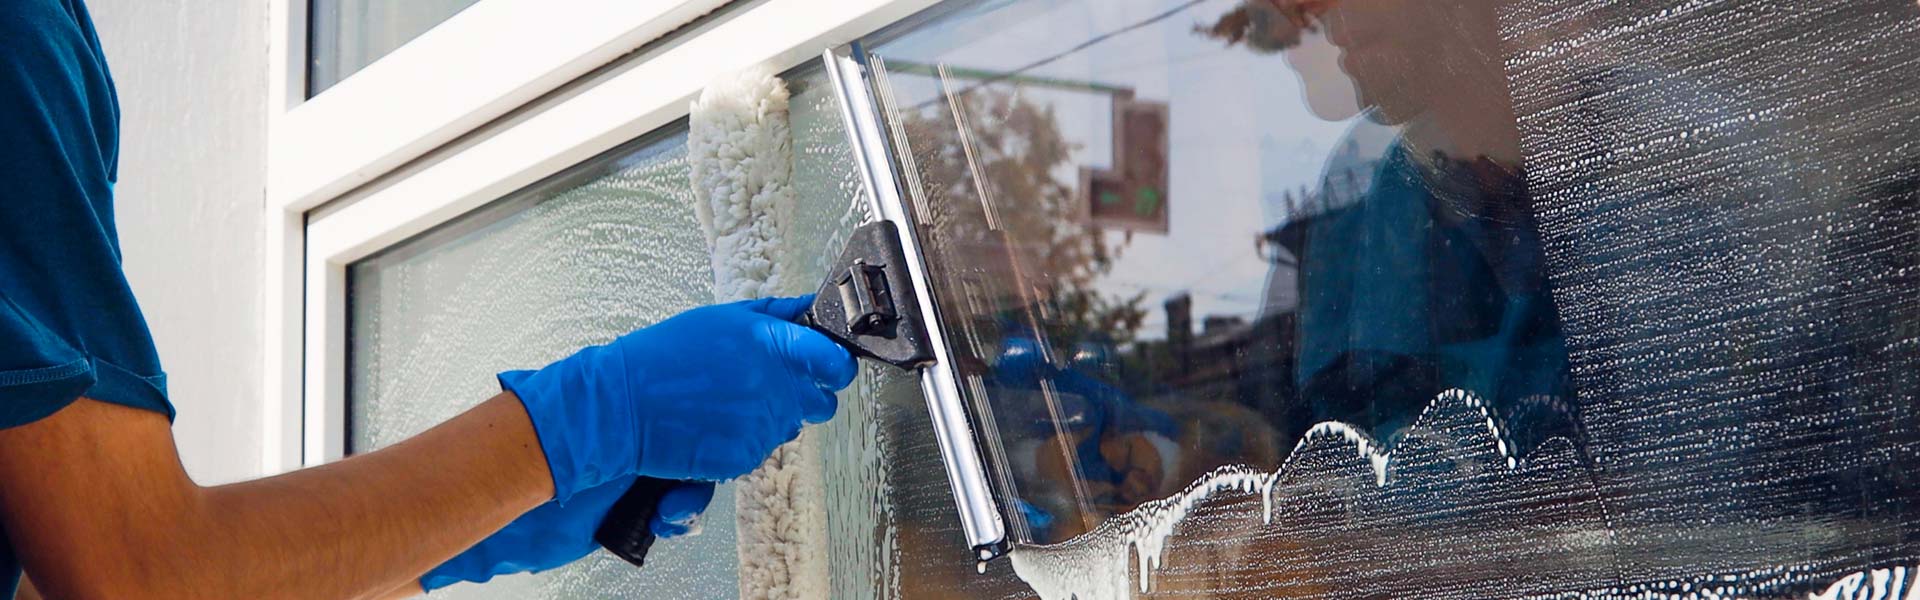 Entreprise de nettoyage de vitres, spécialiste en Belgique